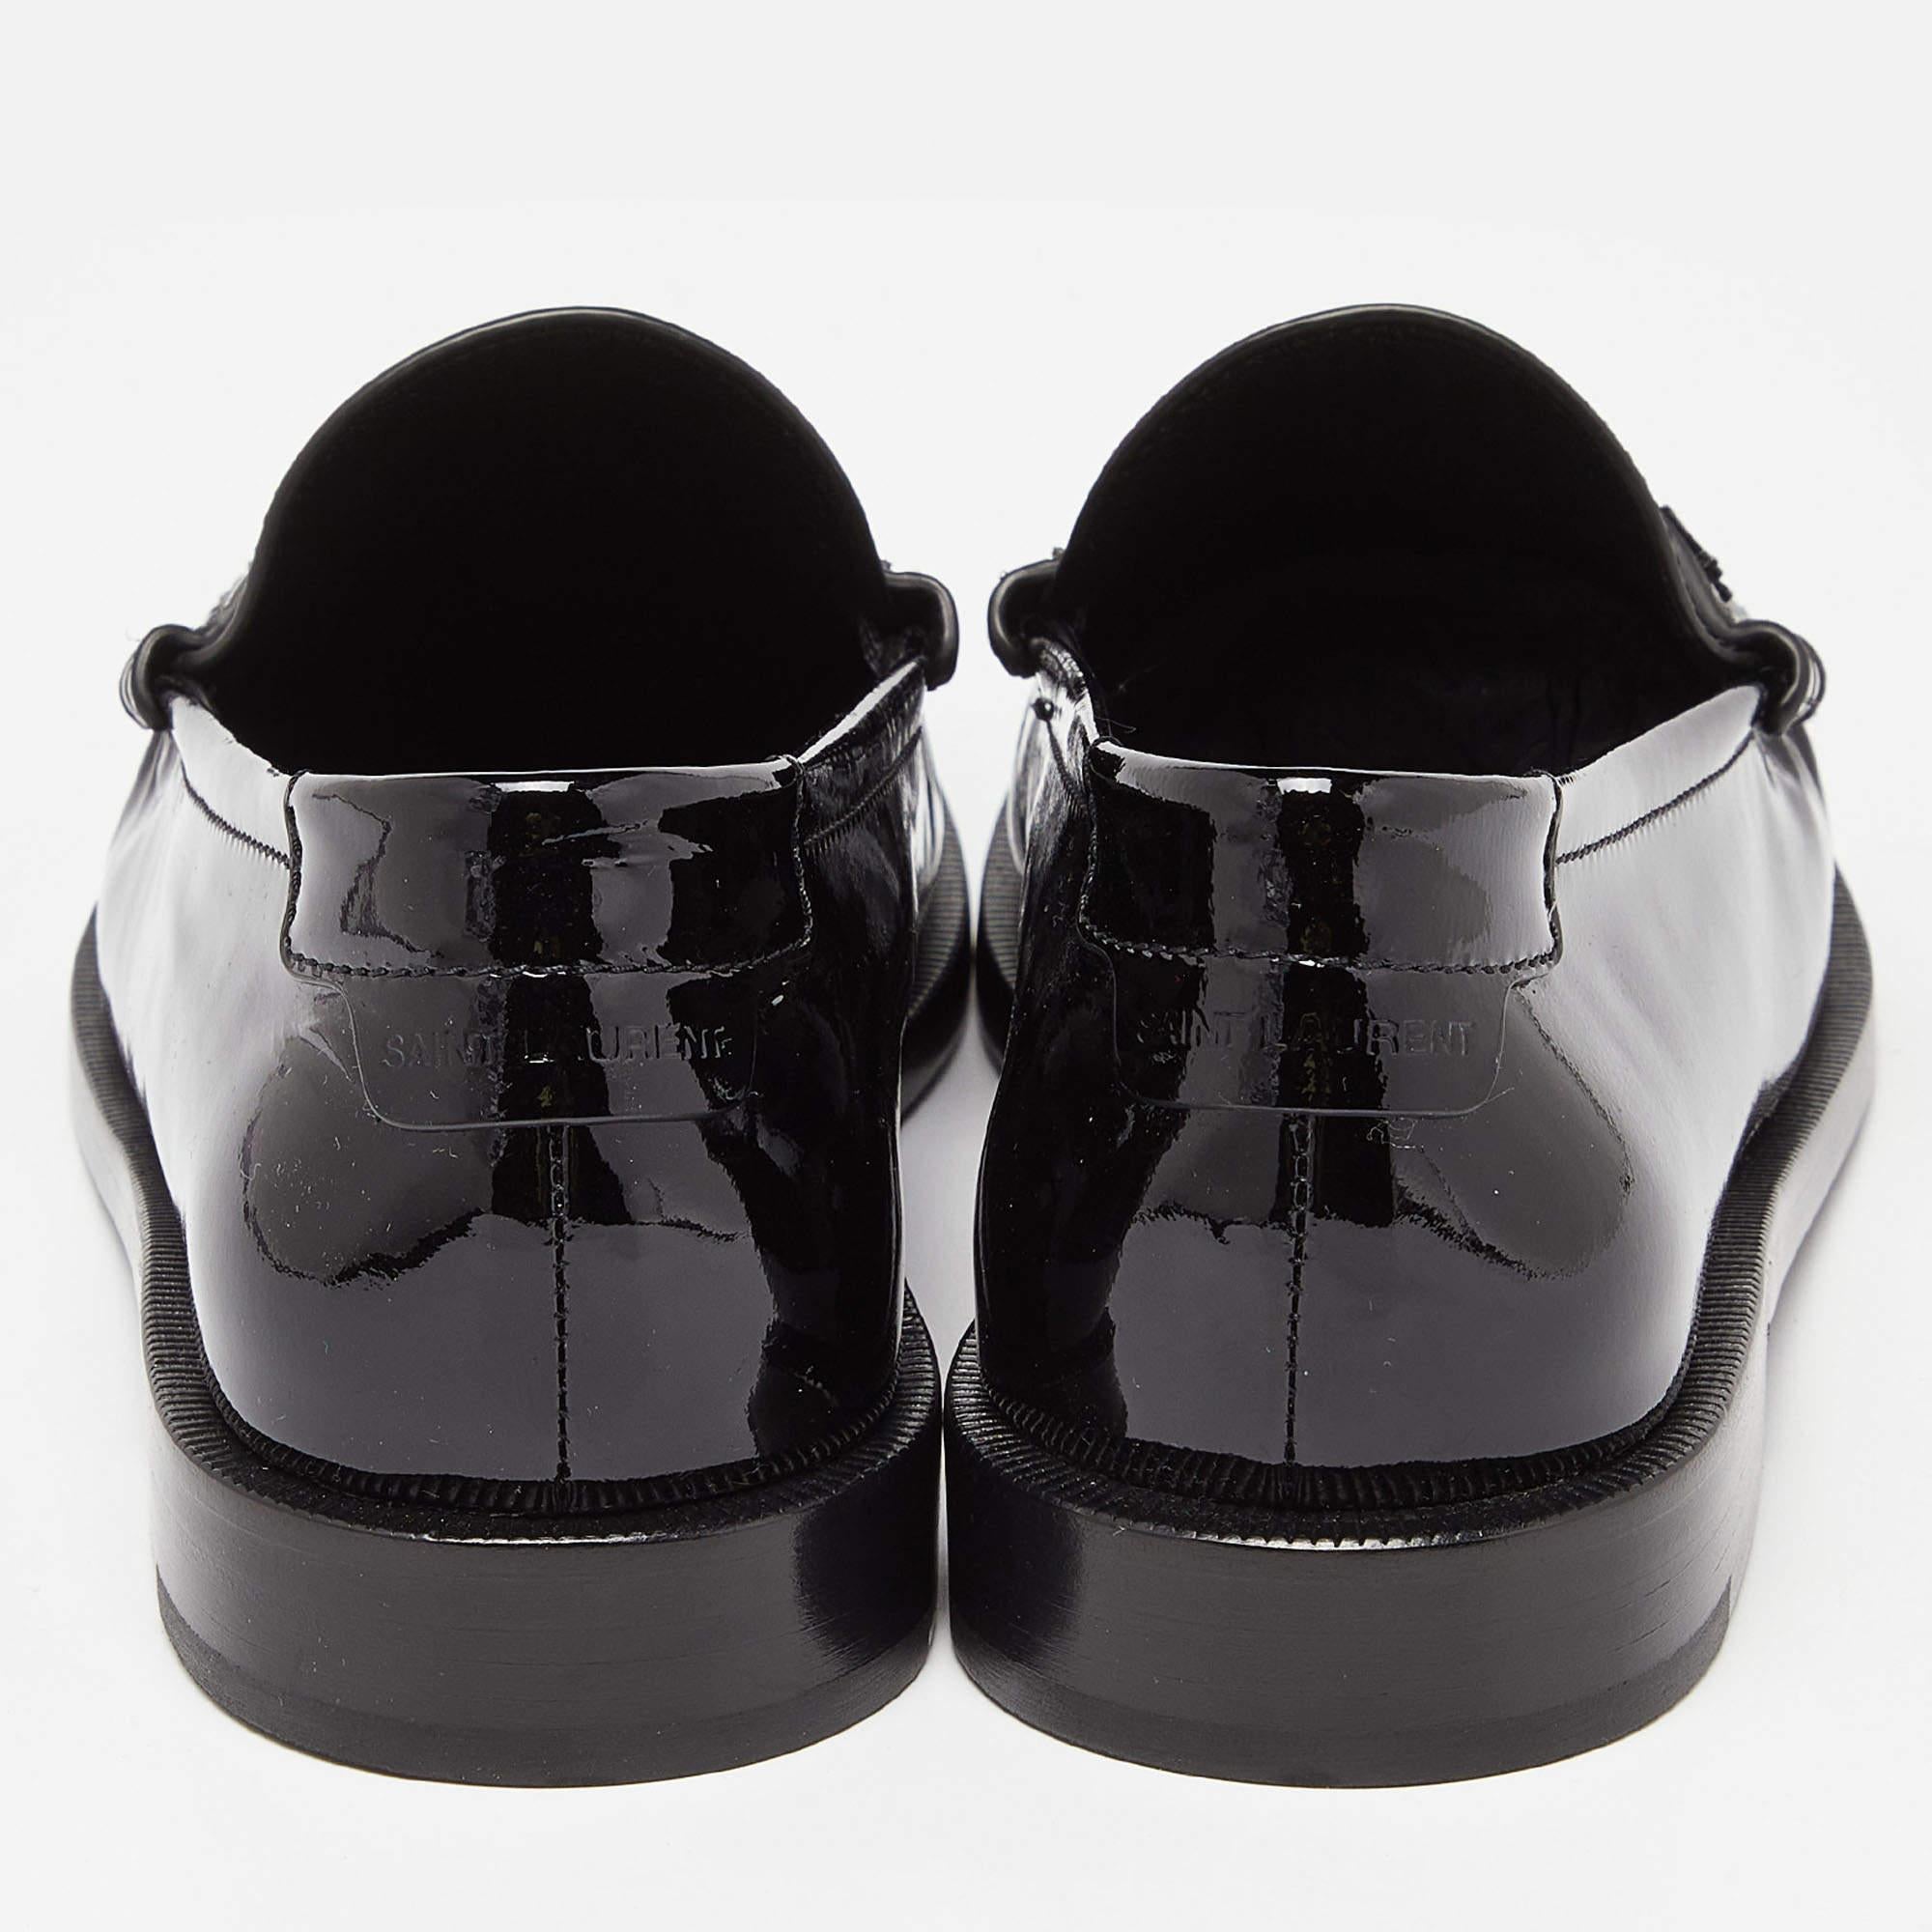 Saint Laurent Black Patent Leather Penny Le Loafers Size 37.5 4